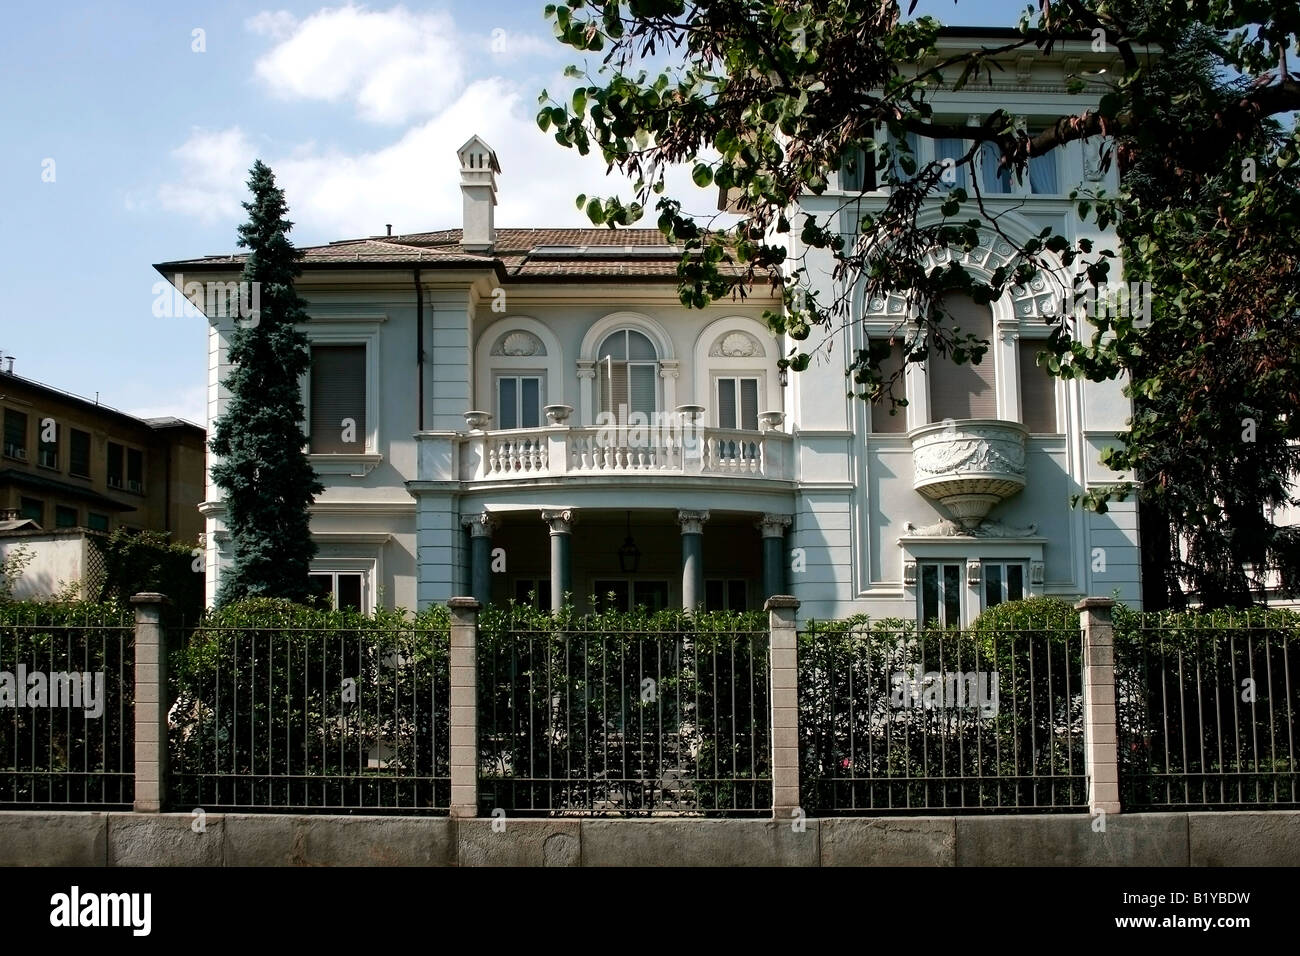 Residential villa. La Crocetta district, Turin. Italy Stock Photo